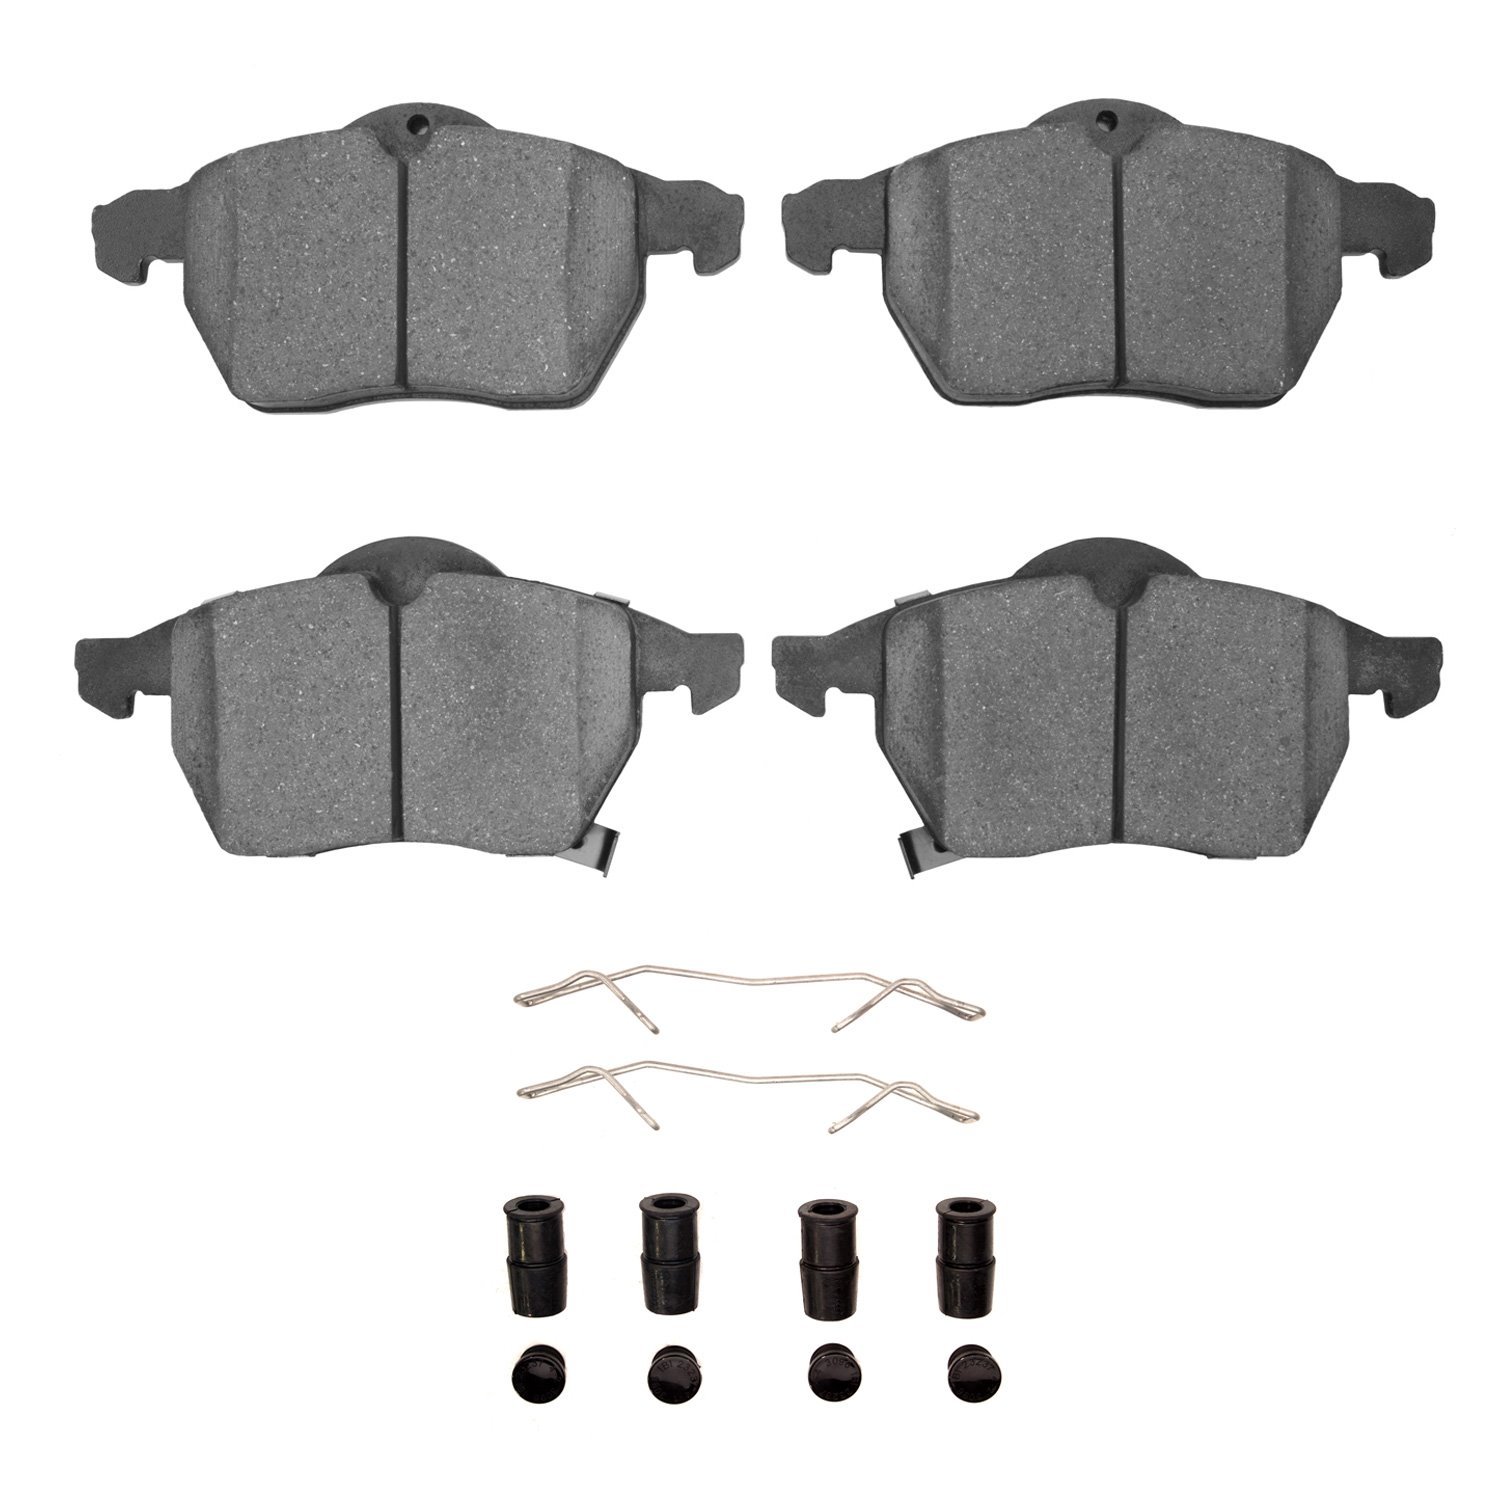 1310-0819-01 3000-Series Ceramic Brake Pads & Hardware Kit, 1997-2010 GM, Position: Front